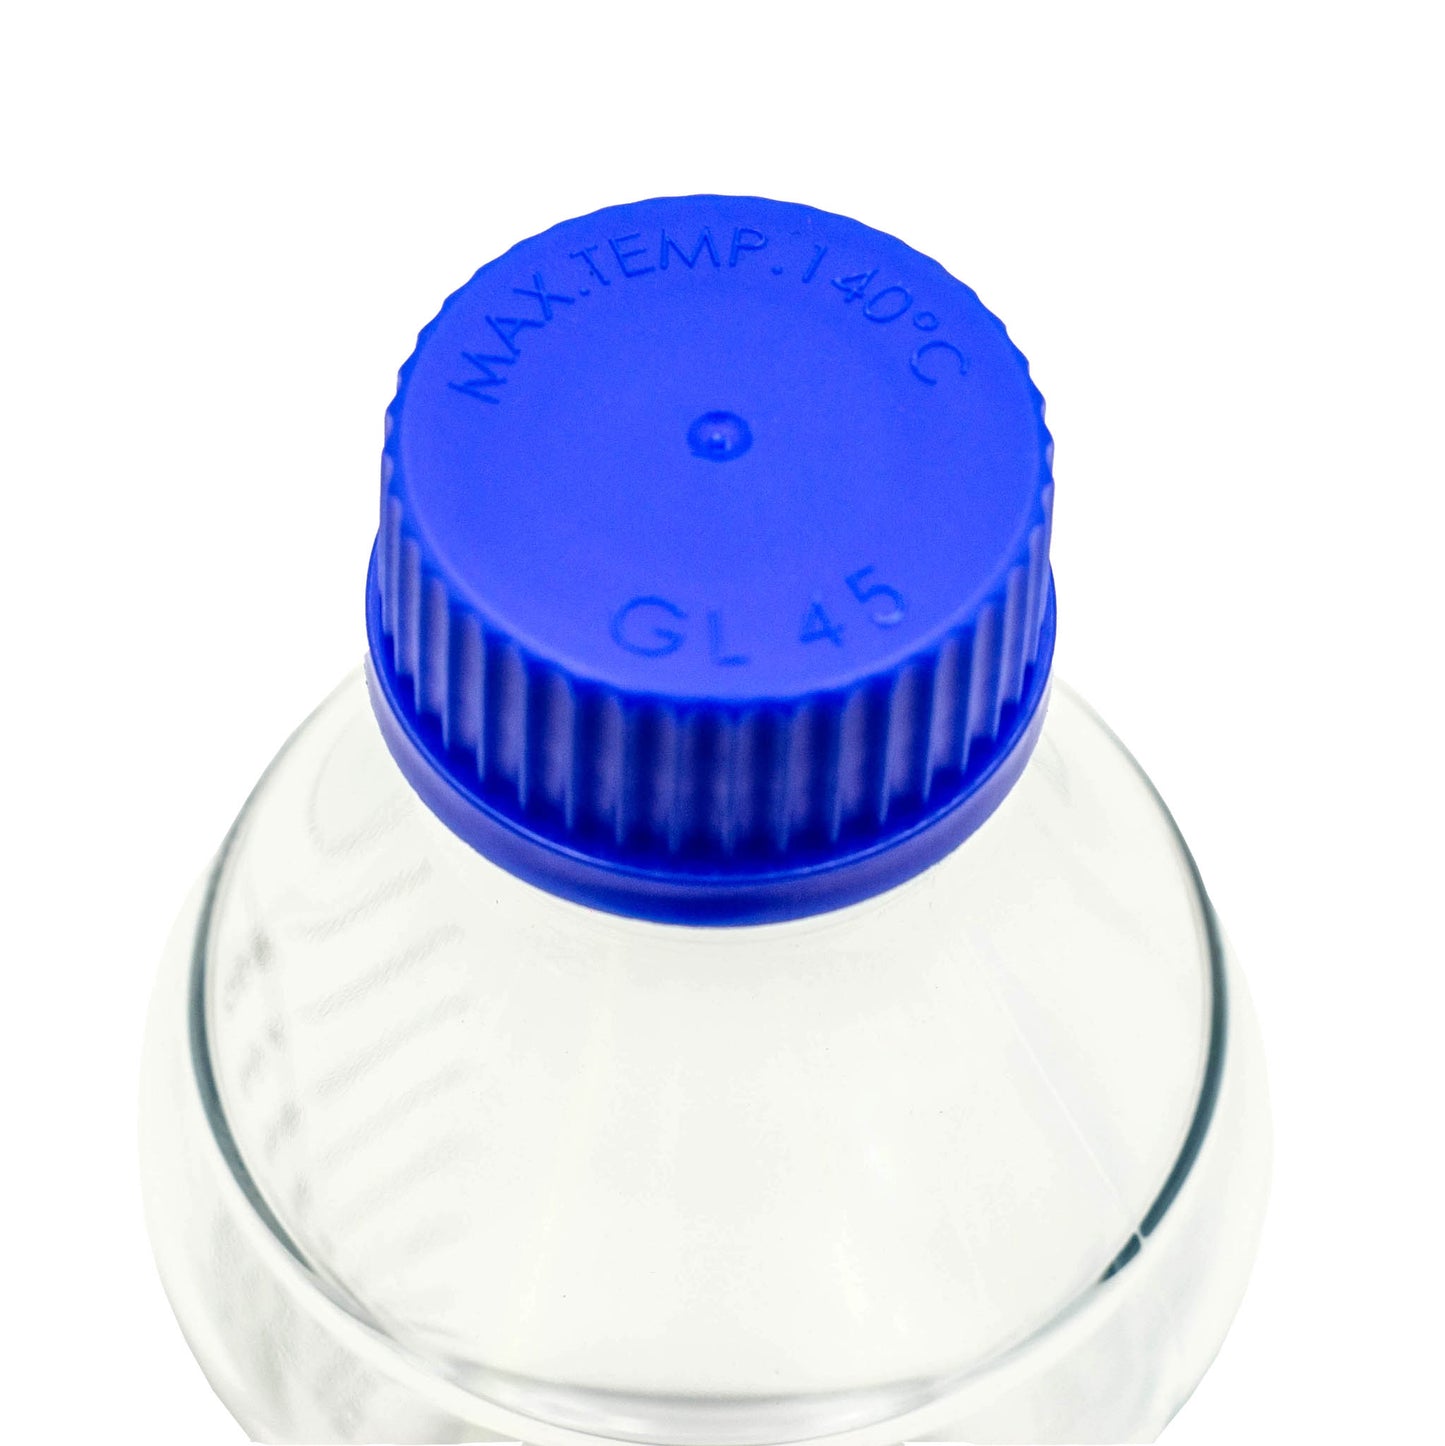 Blue plastic lid advising max temperature of 140 degrees celsius. 